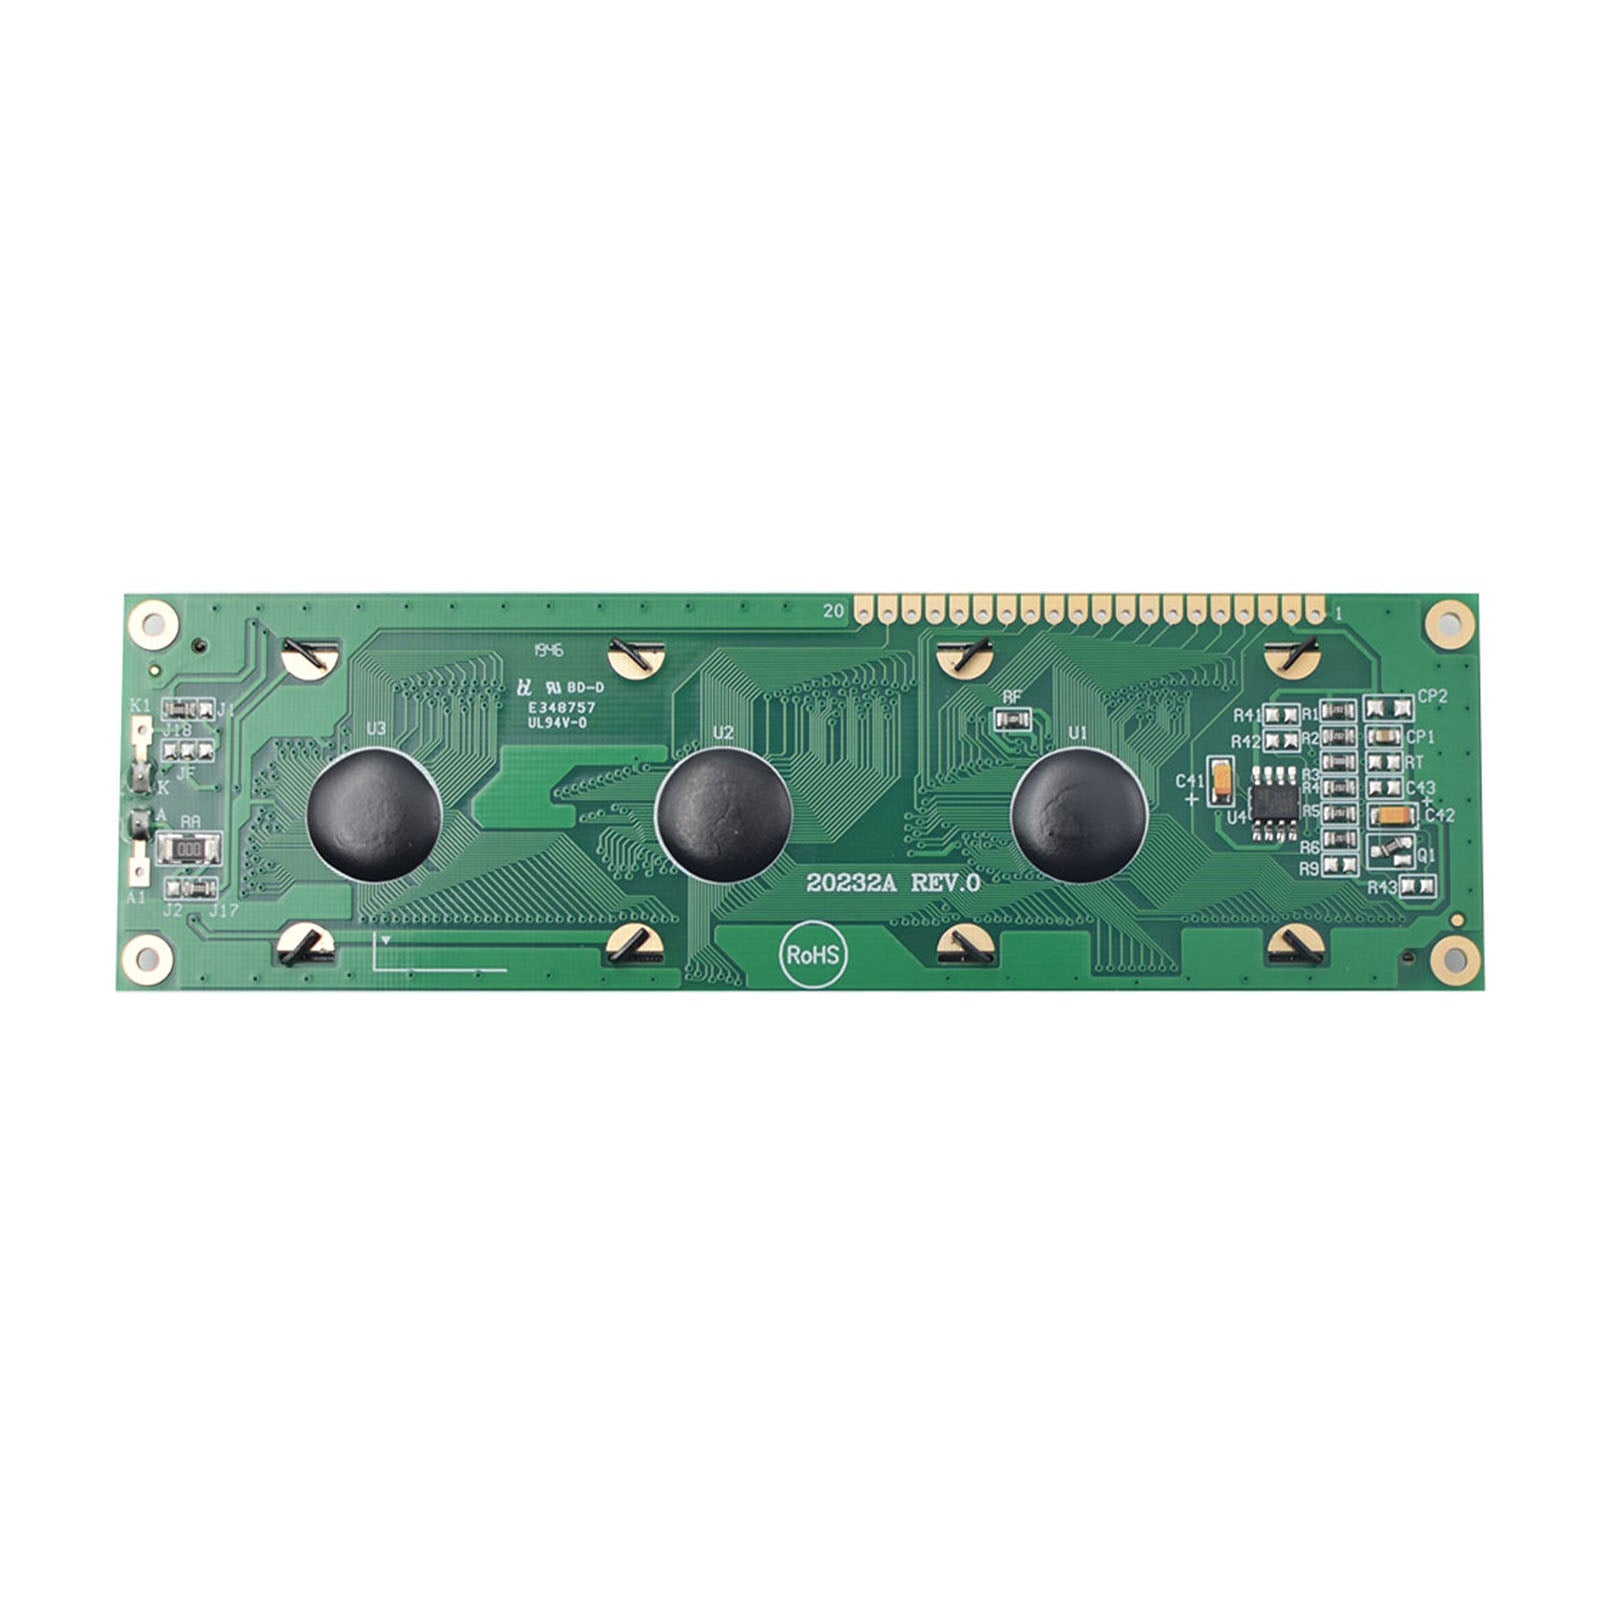 DisplayModule 4.9" 202x32 Industrial Yellow Green Graphic LCD - MCU